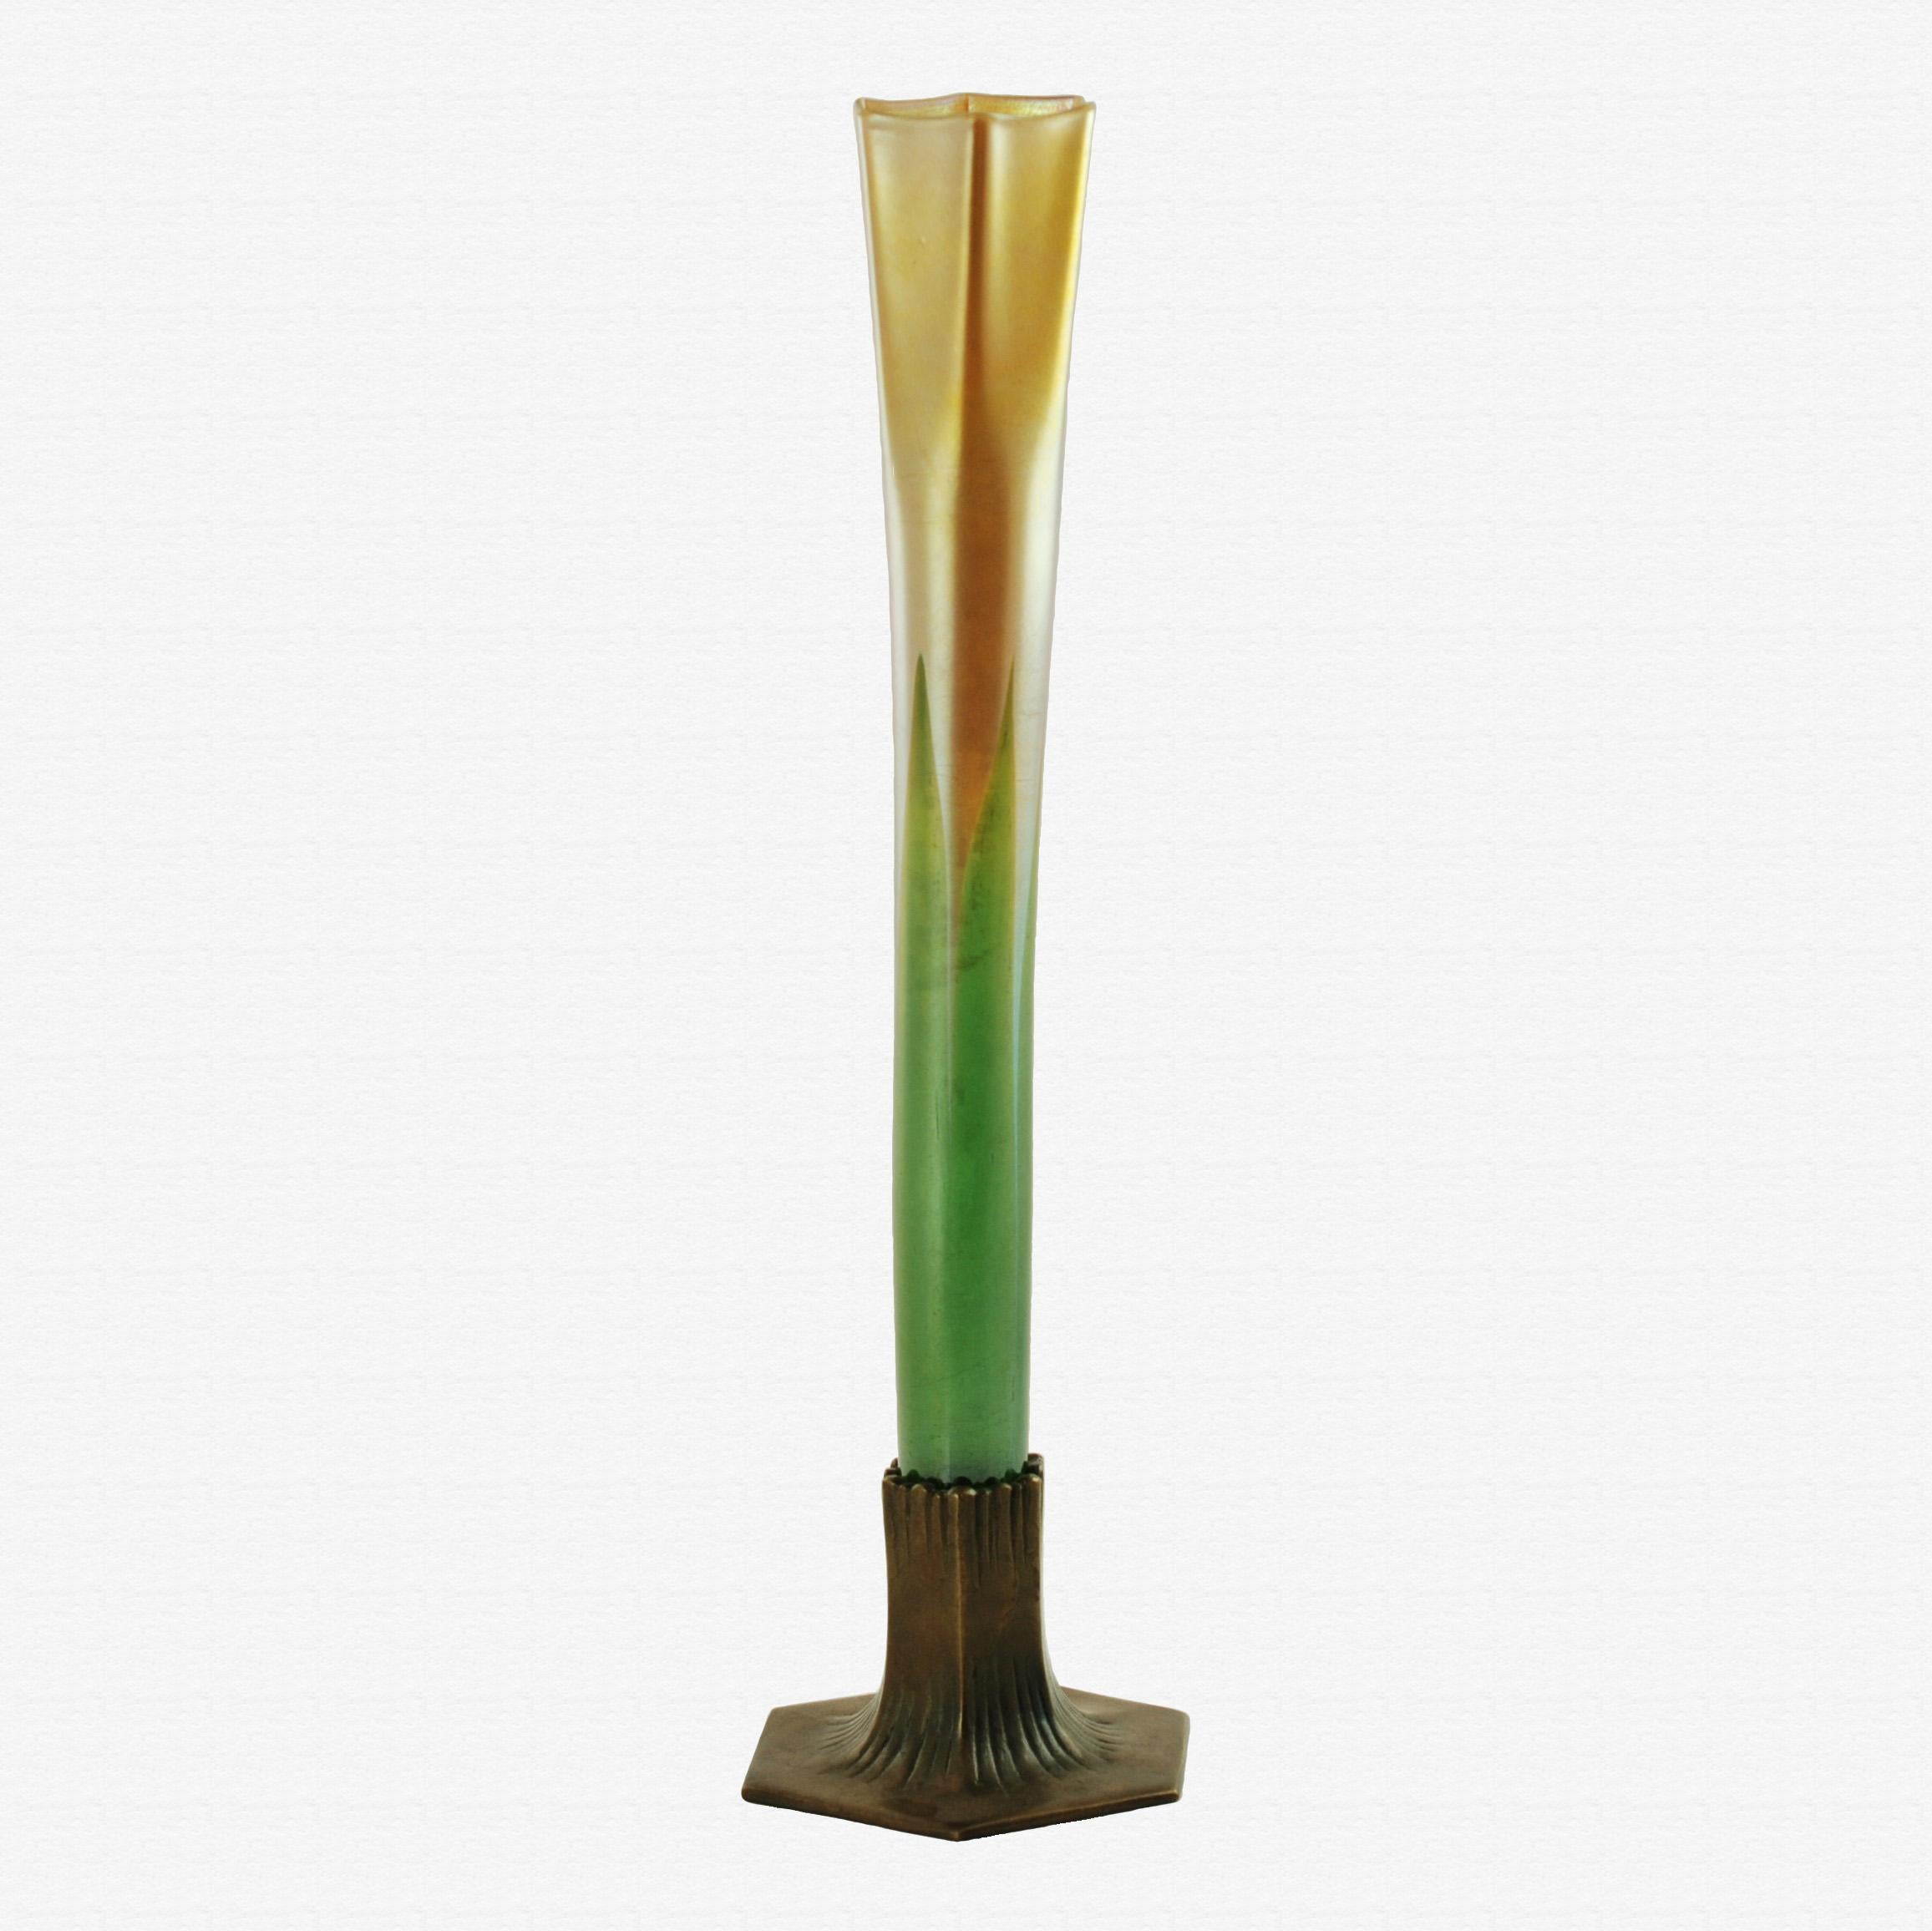 Diese hohe Knospenvase aus Favrile-Glas wurde von Tiffany hergestellt und geht von Flaschengrün in eine warme, schillernde Goldfarbe über. Der Körper der Vase hat unten eine zylindrische Form, die sich nach oben zu einer gerippten Mündung mit sechs